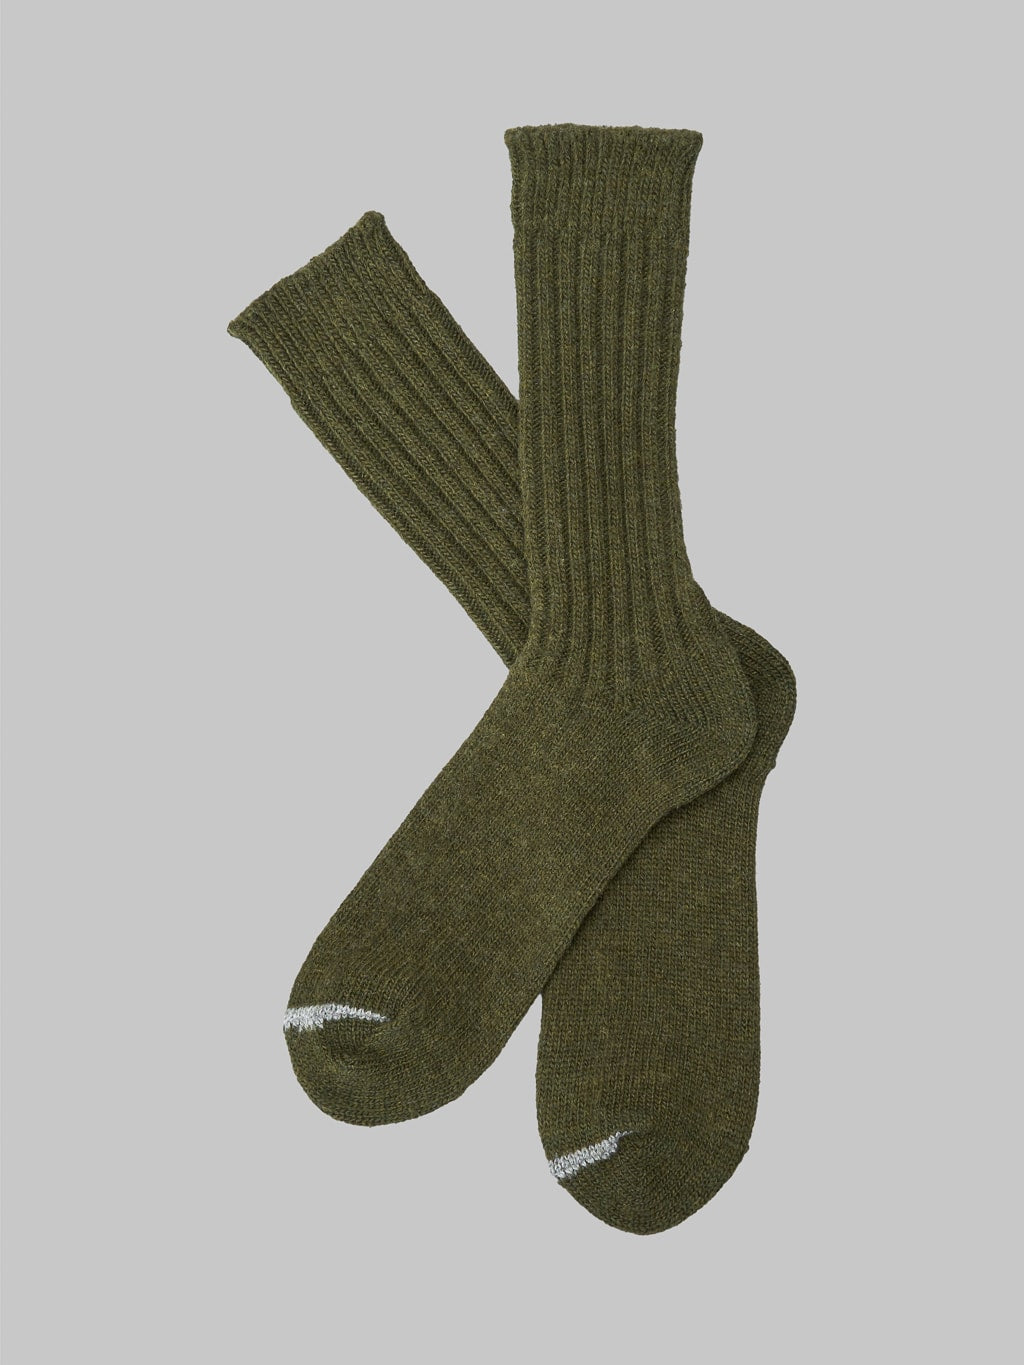 Nishiguchi Kutsushita Wool Ribbed Socks Khaki